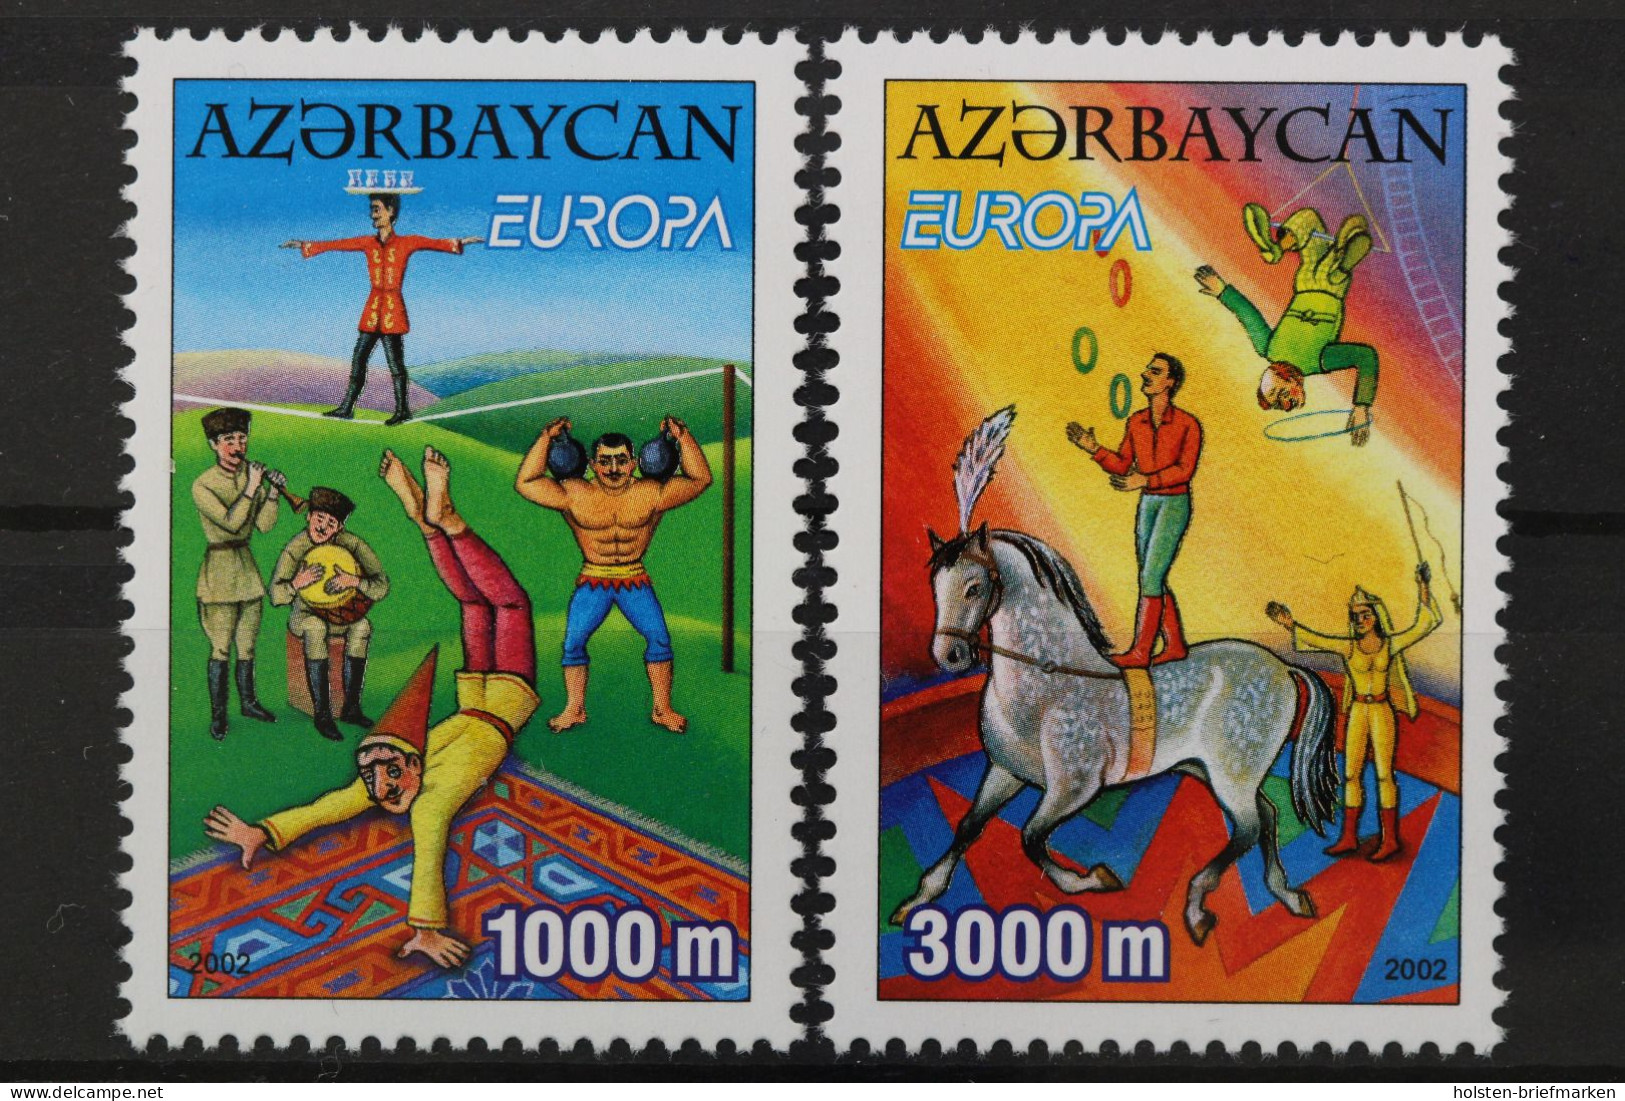 Aserbaidschan, MiNr. 513-514 A, Postfrisch - Azerbaïjan